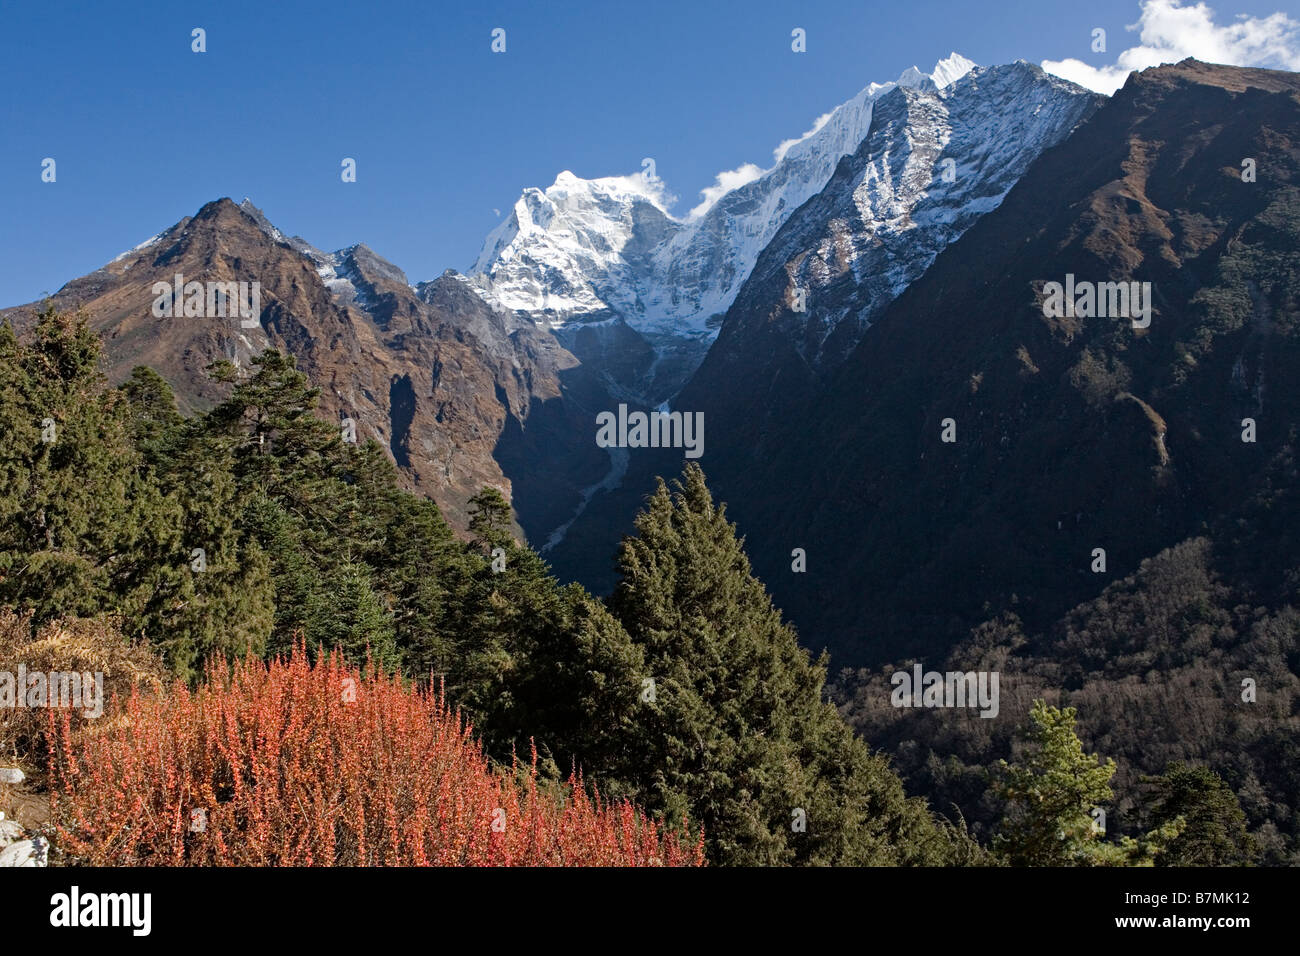 La forêt alpine et majestueux Kang Taiga 6685 m Mountain comme vu dans la région de la vallée de Khumbu Everest Népal Banque D'Images